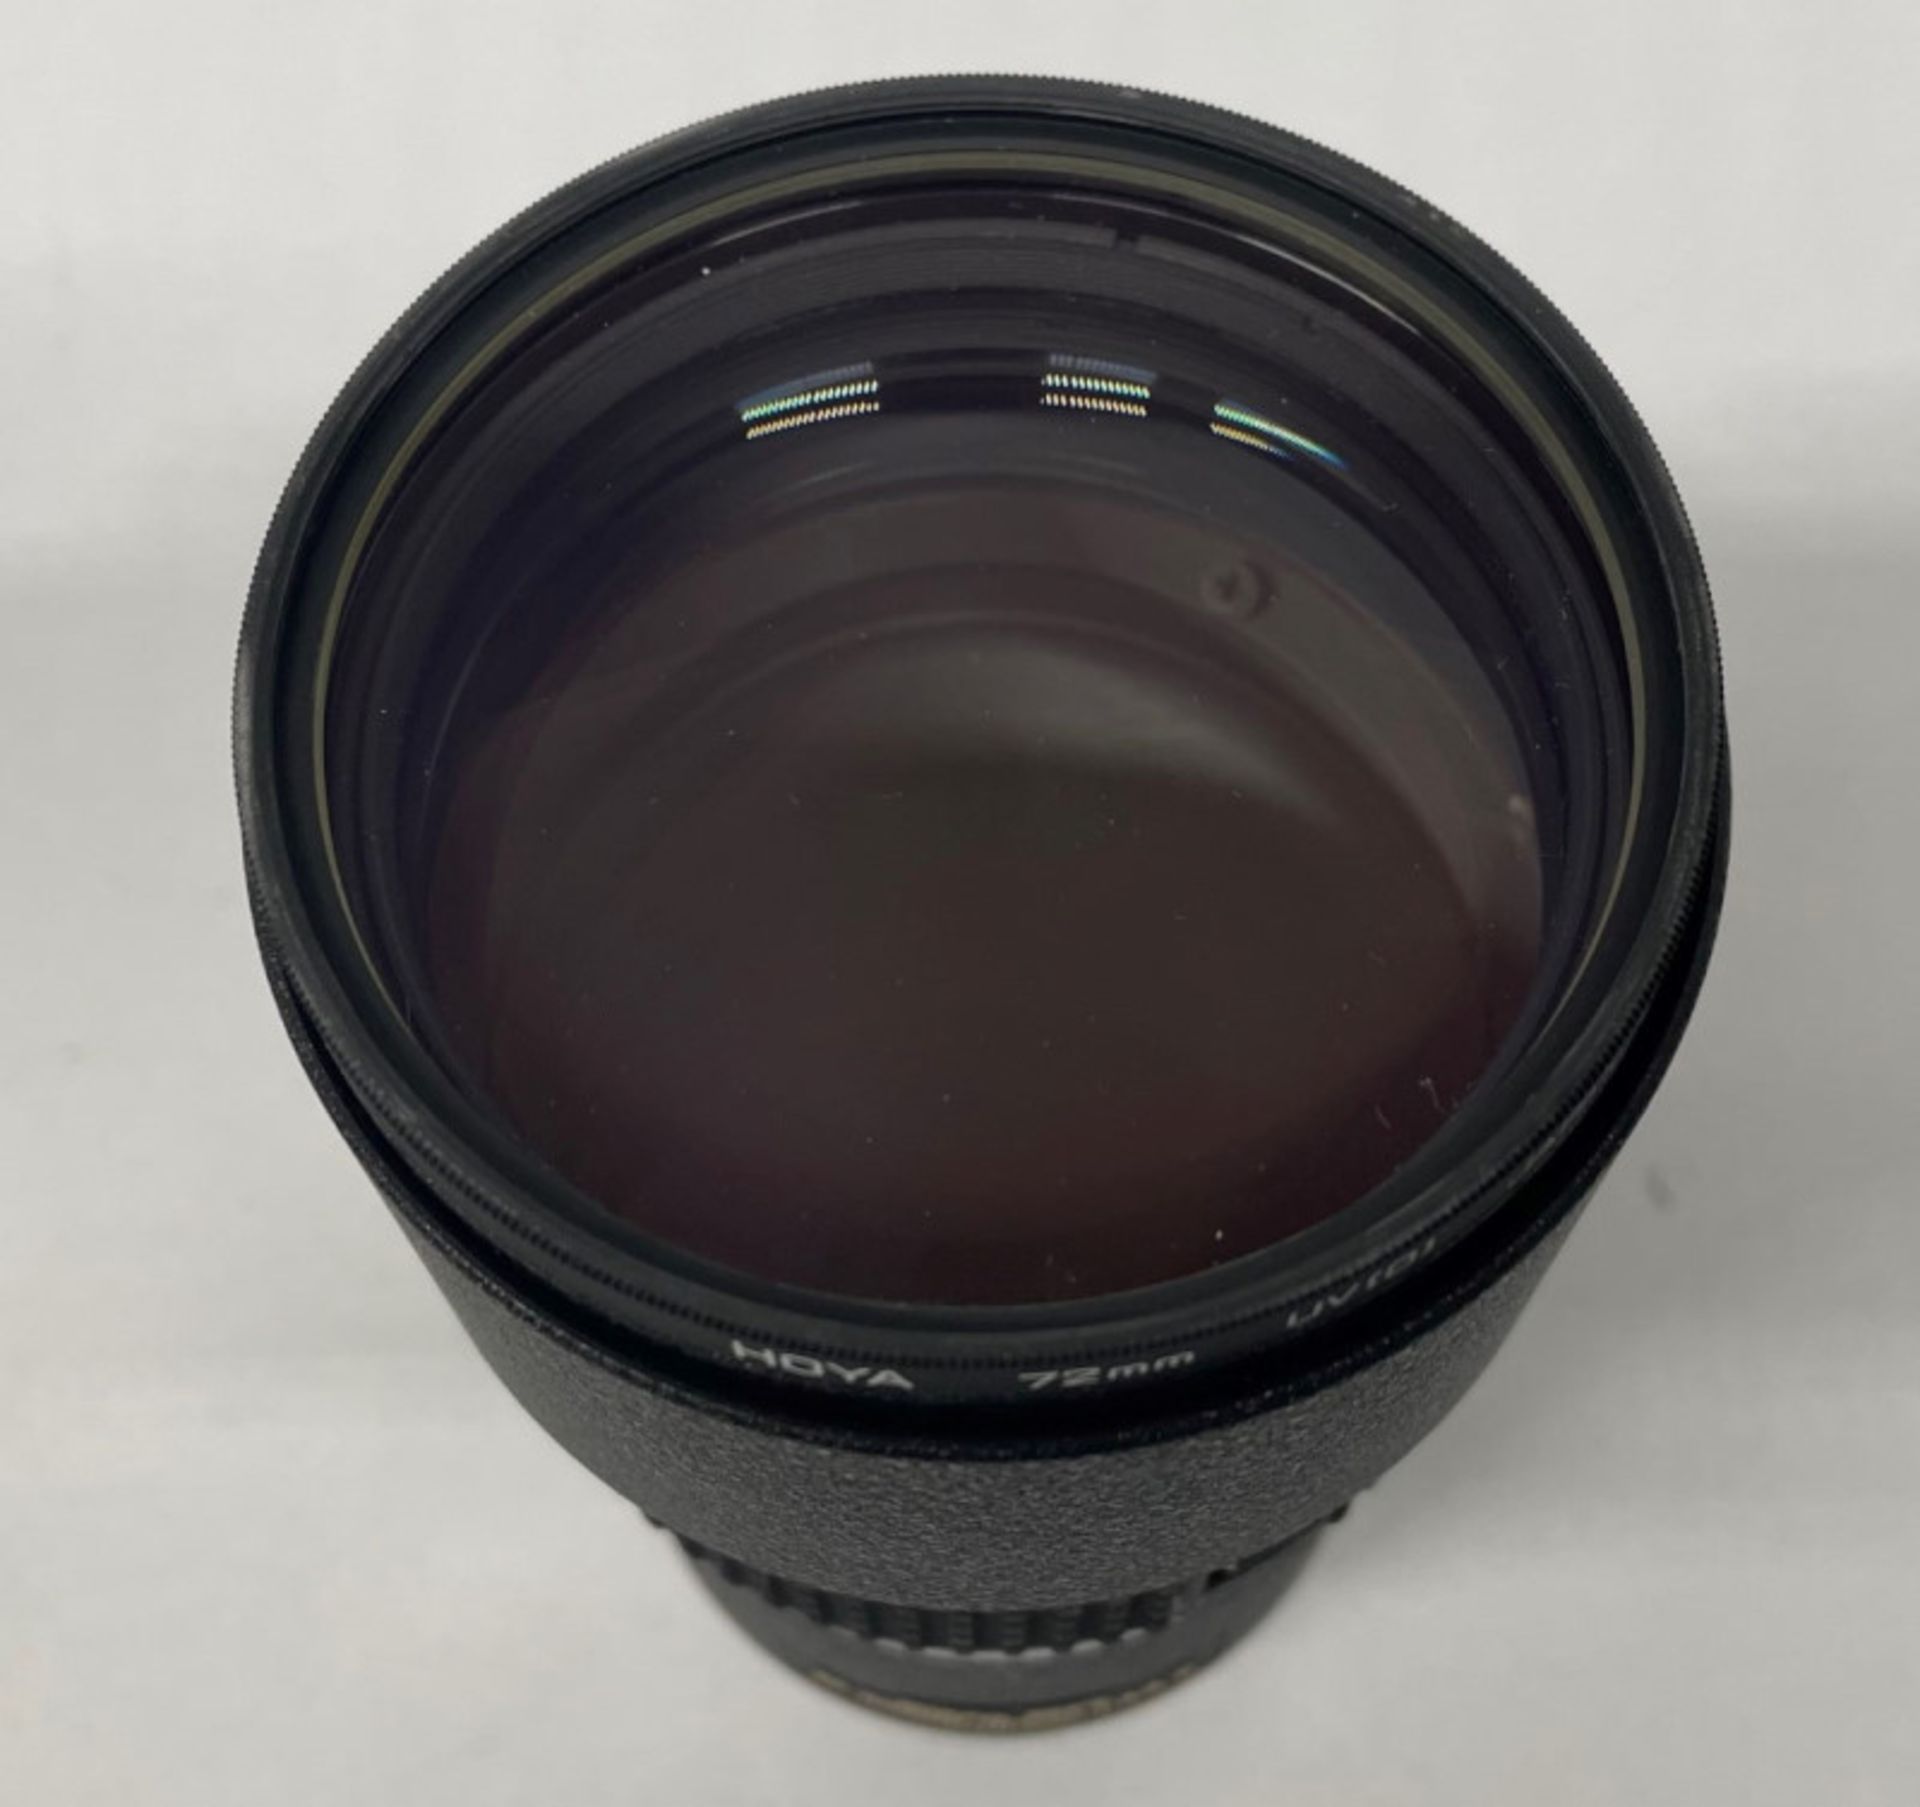 Nikon ED AF Nikkor 180mm - 1:2.8 Lens - Serial No. 400418 with HOYA 72mm UV(O) Filter in Nikon case - Image 4 of 7